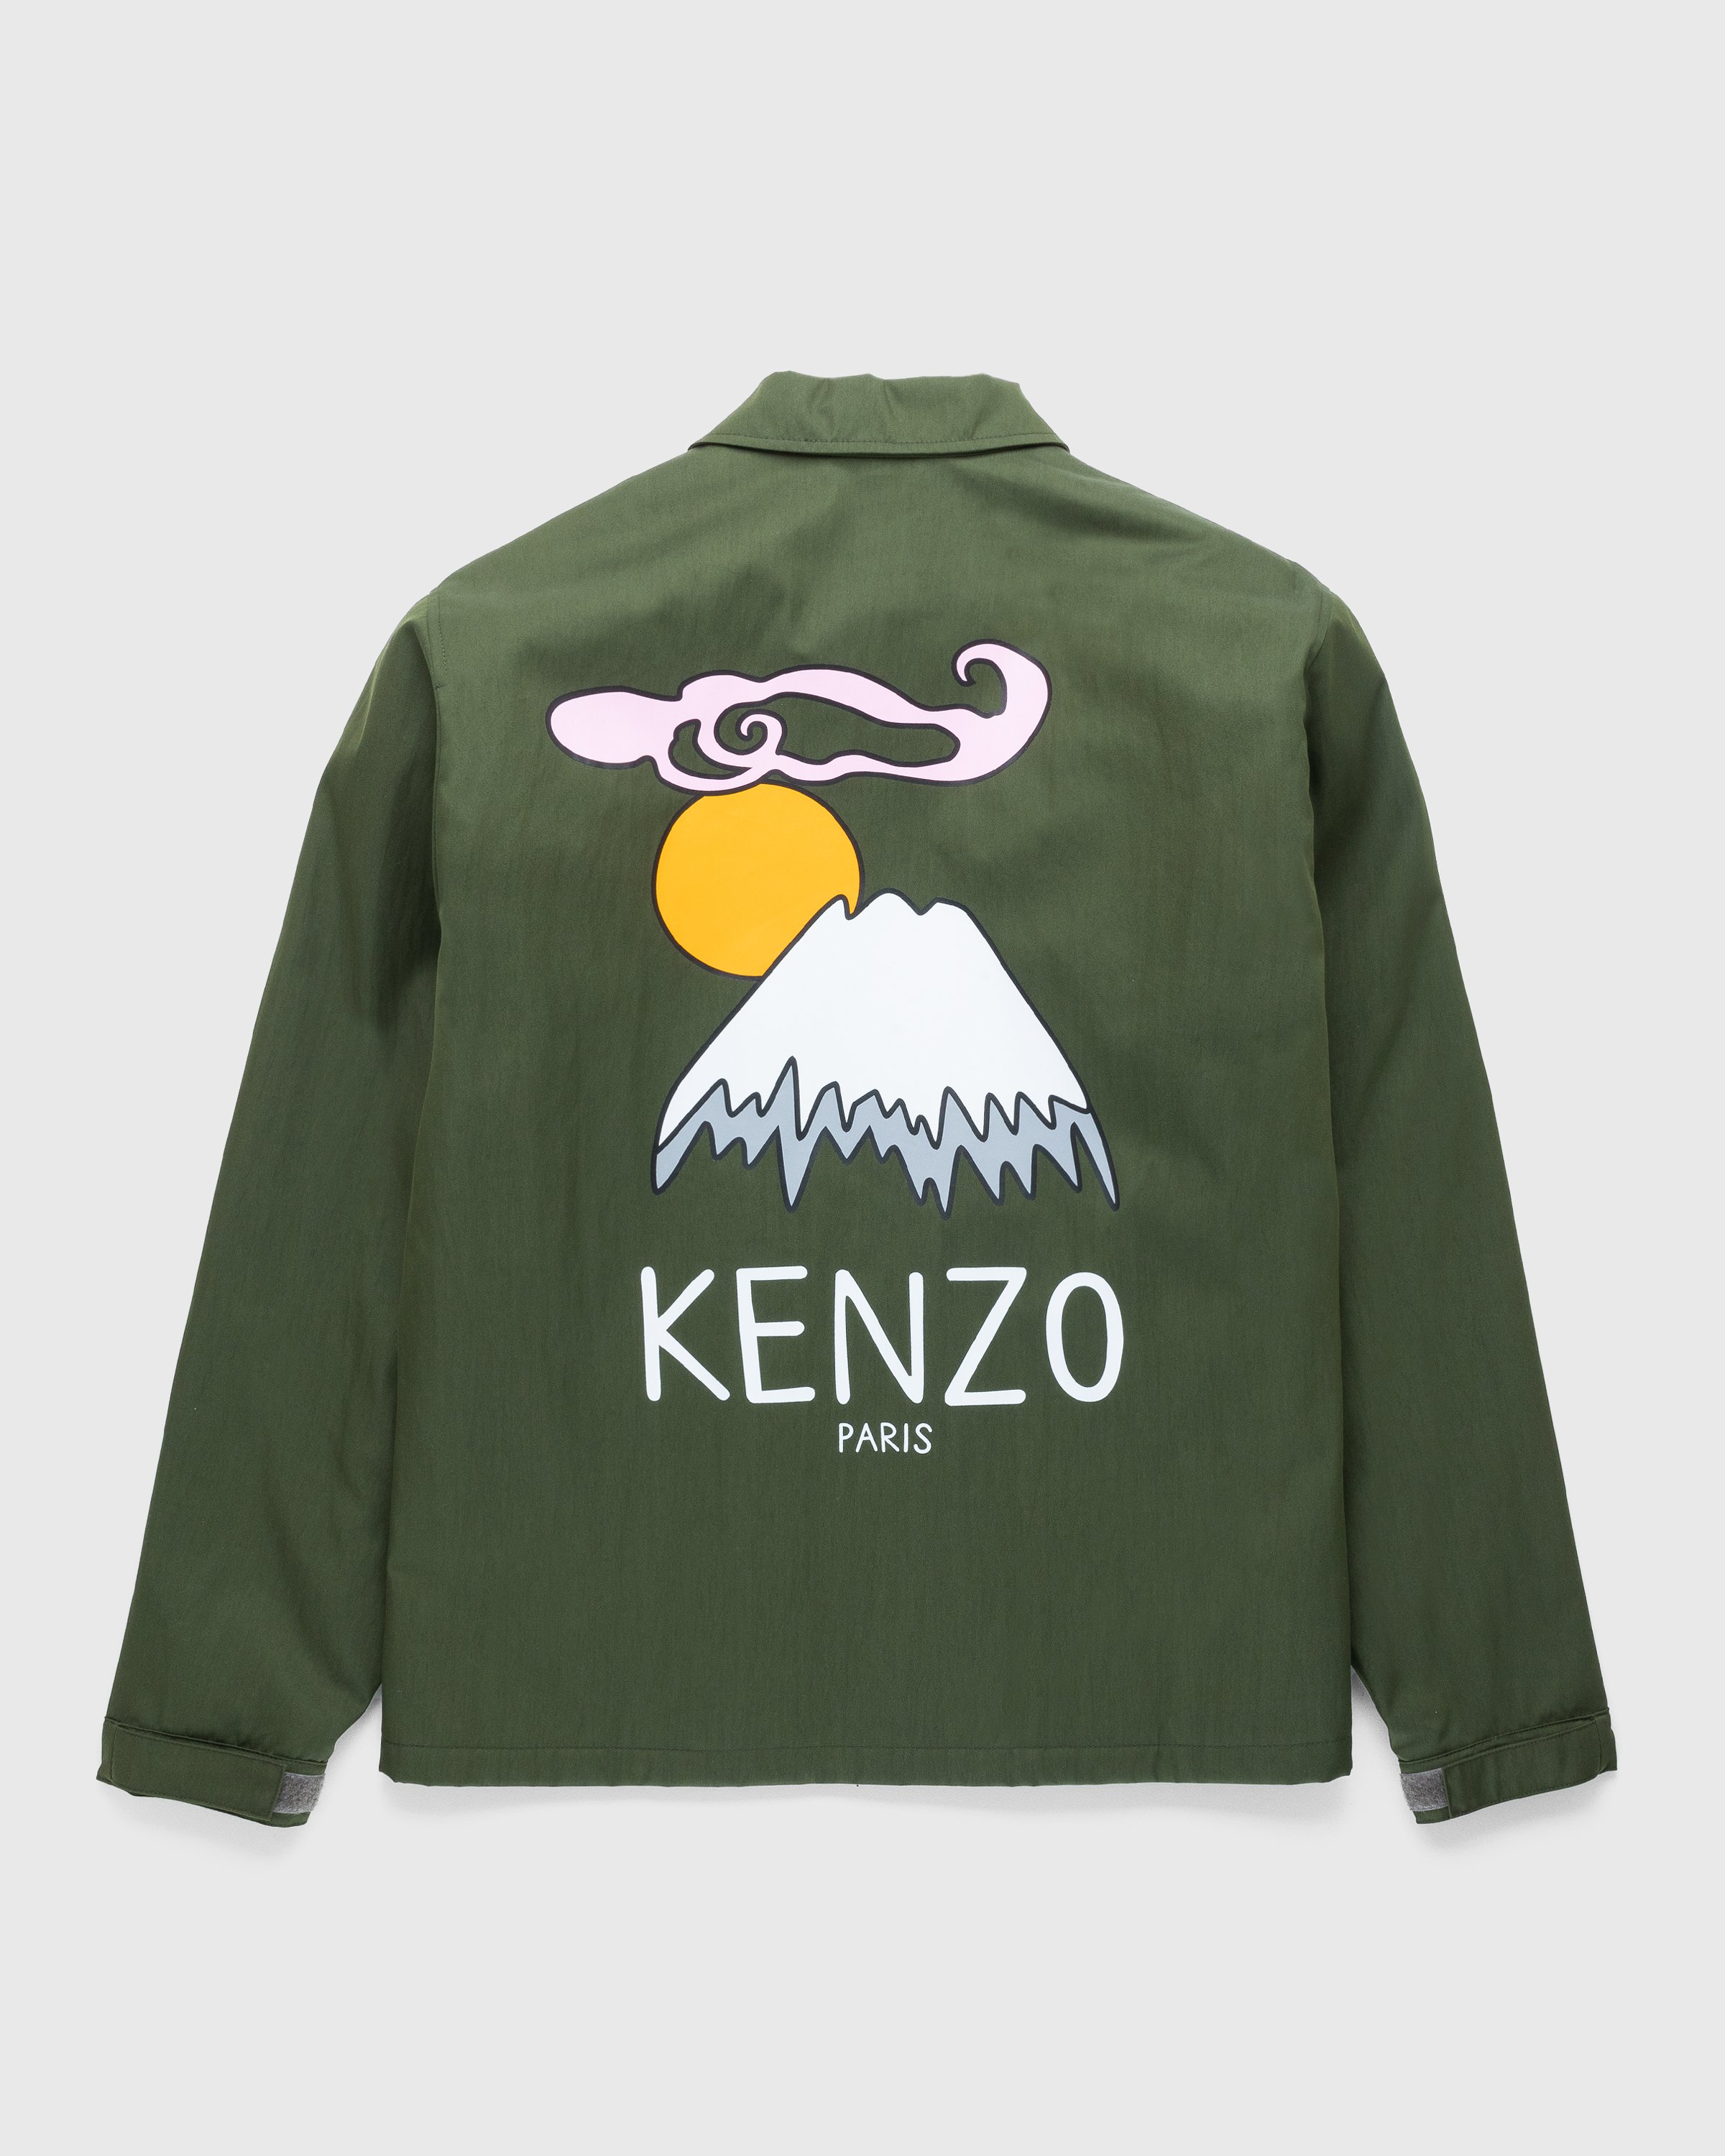 Kenzo - Bomber Jacket Dark Khaki - Clothing - Green - Image 2